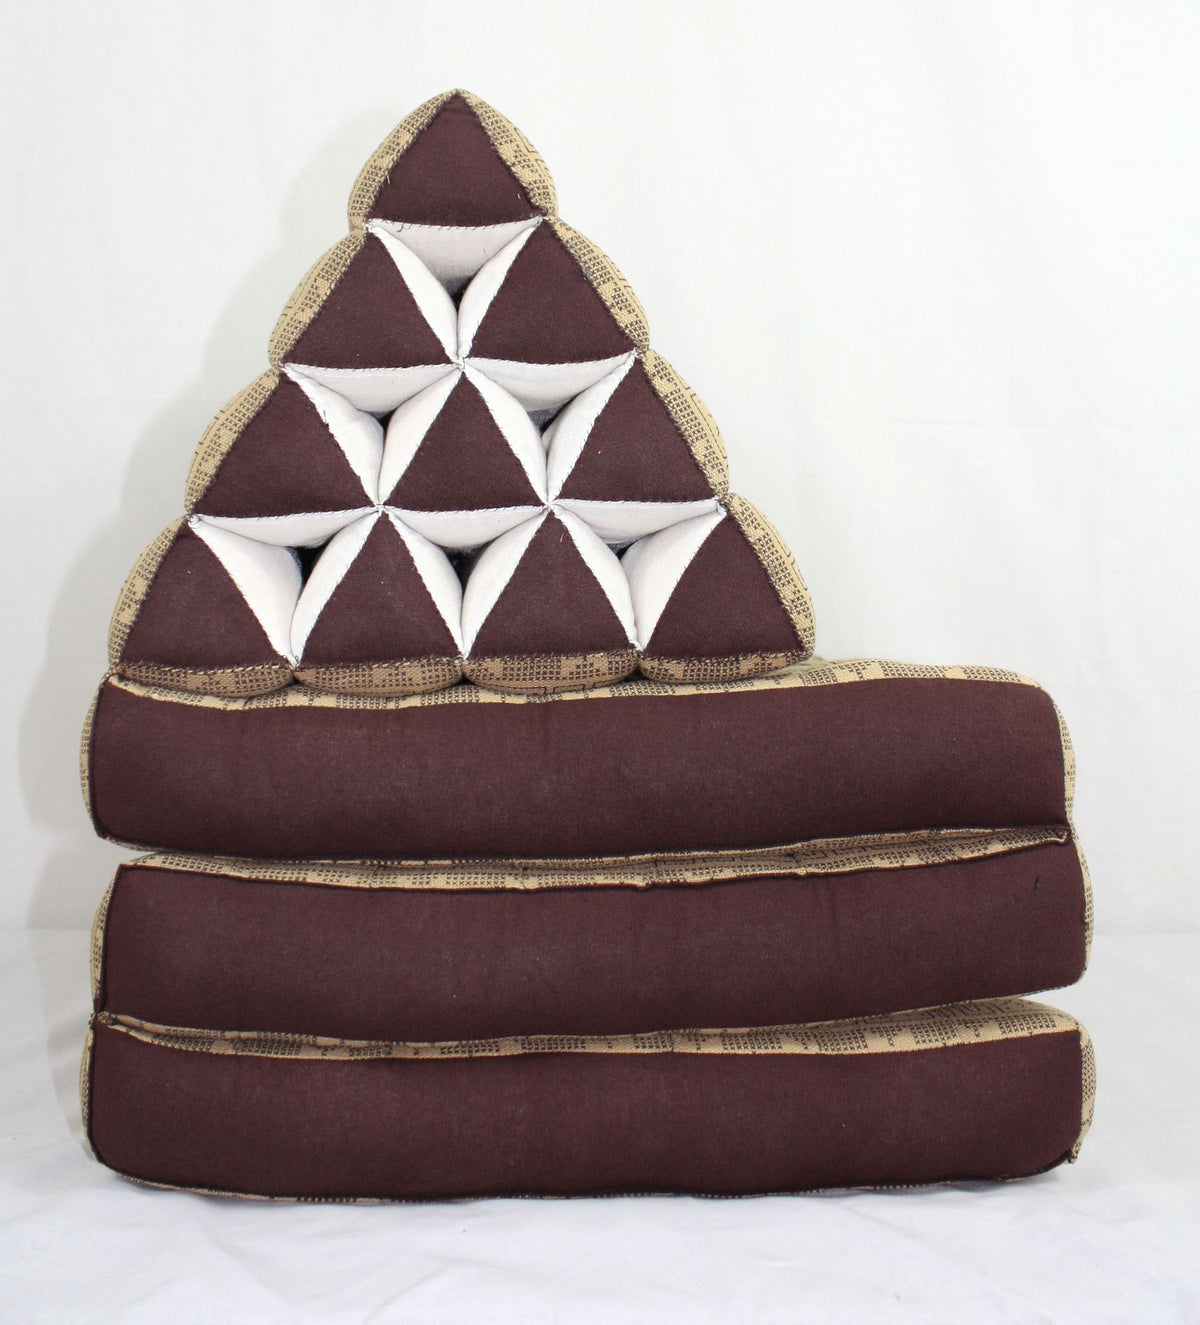 Earth pattern brown cream three-fold Thai cushion - farangshop-co